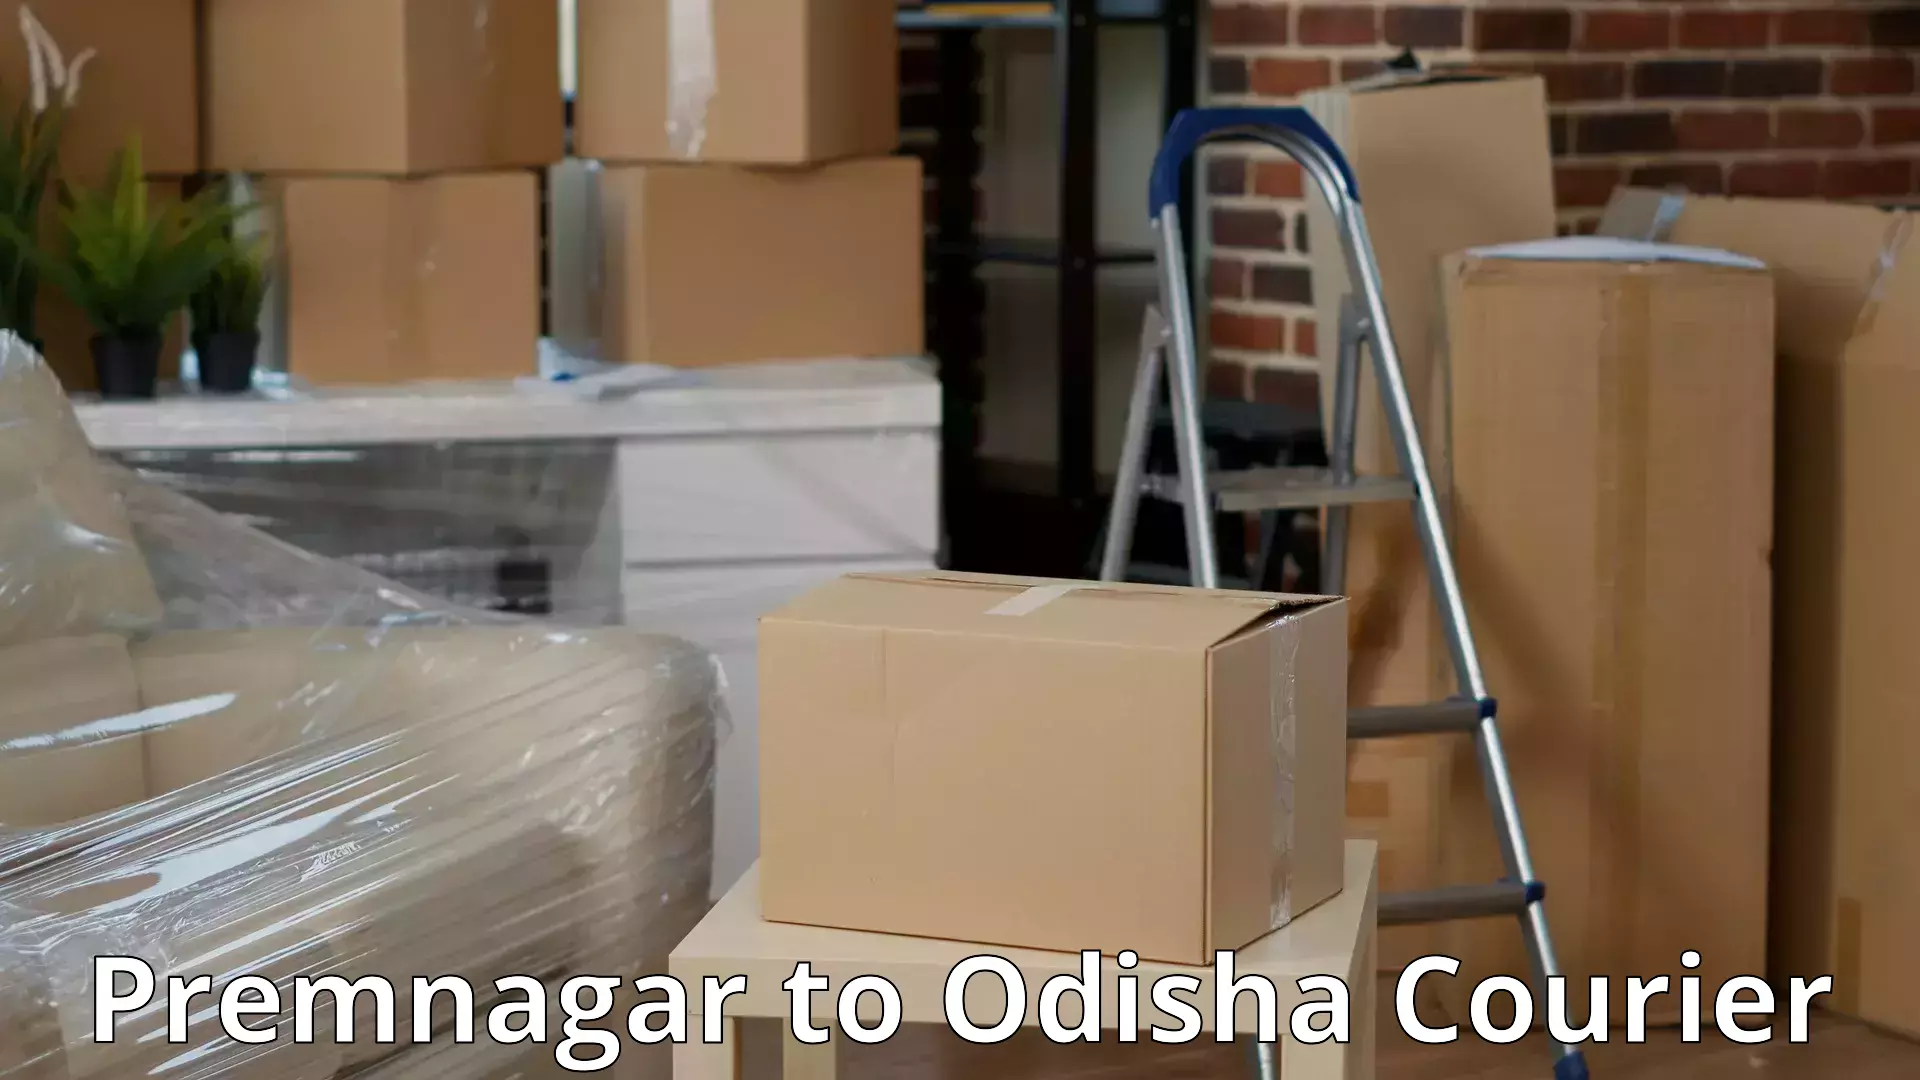 Furniture delivery service in Premnagar to Koraput